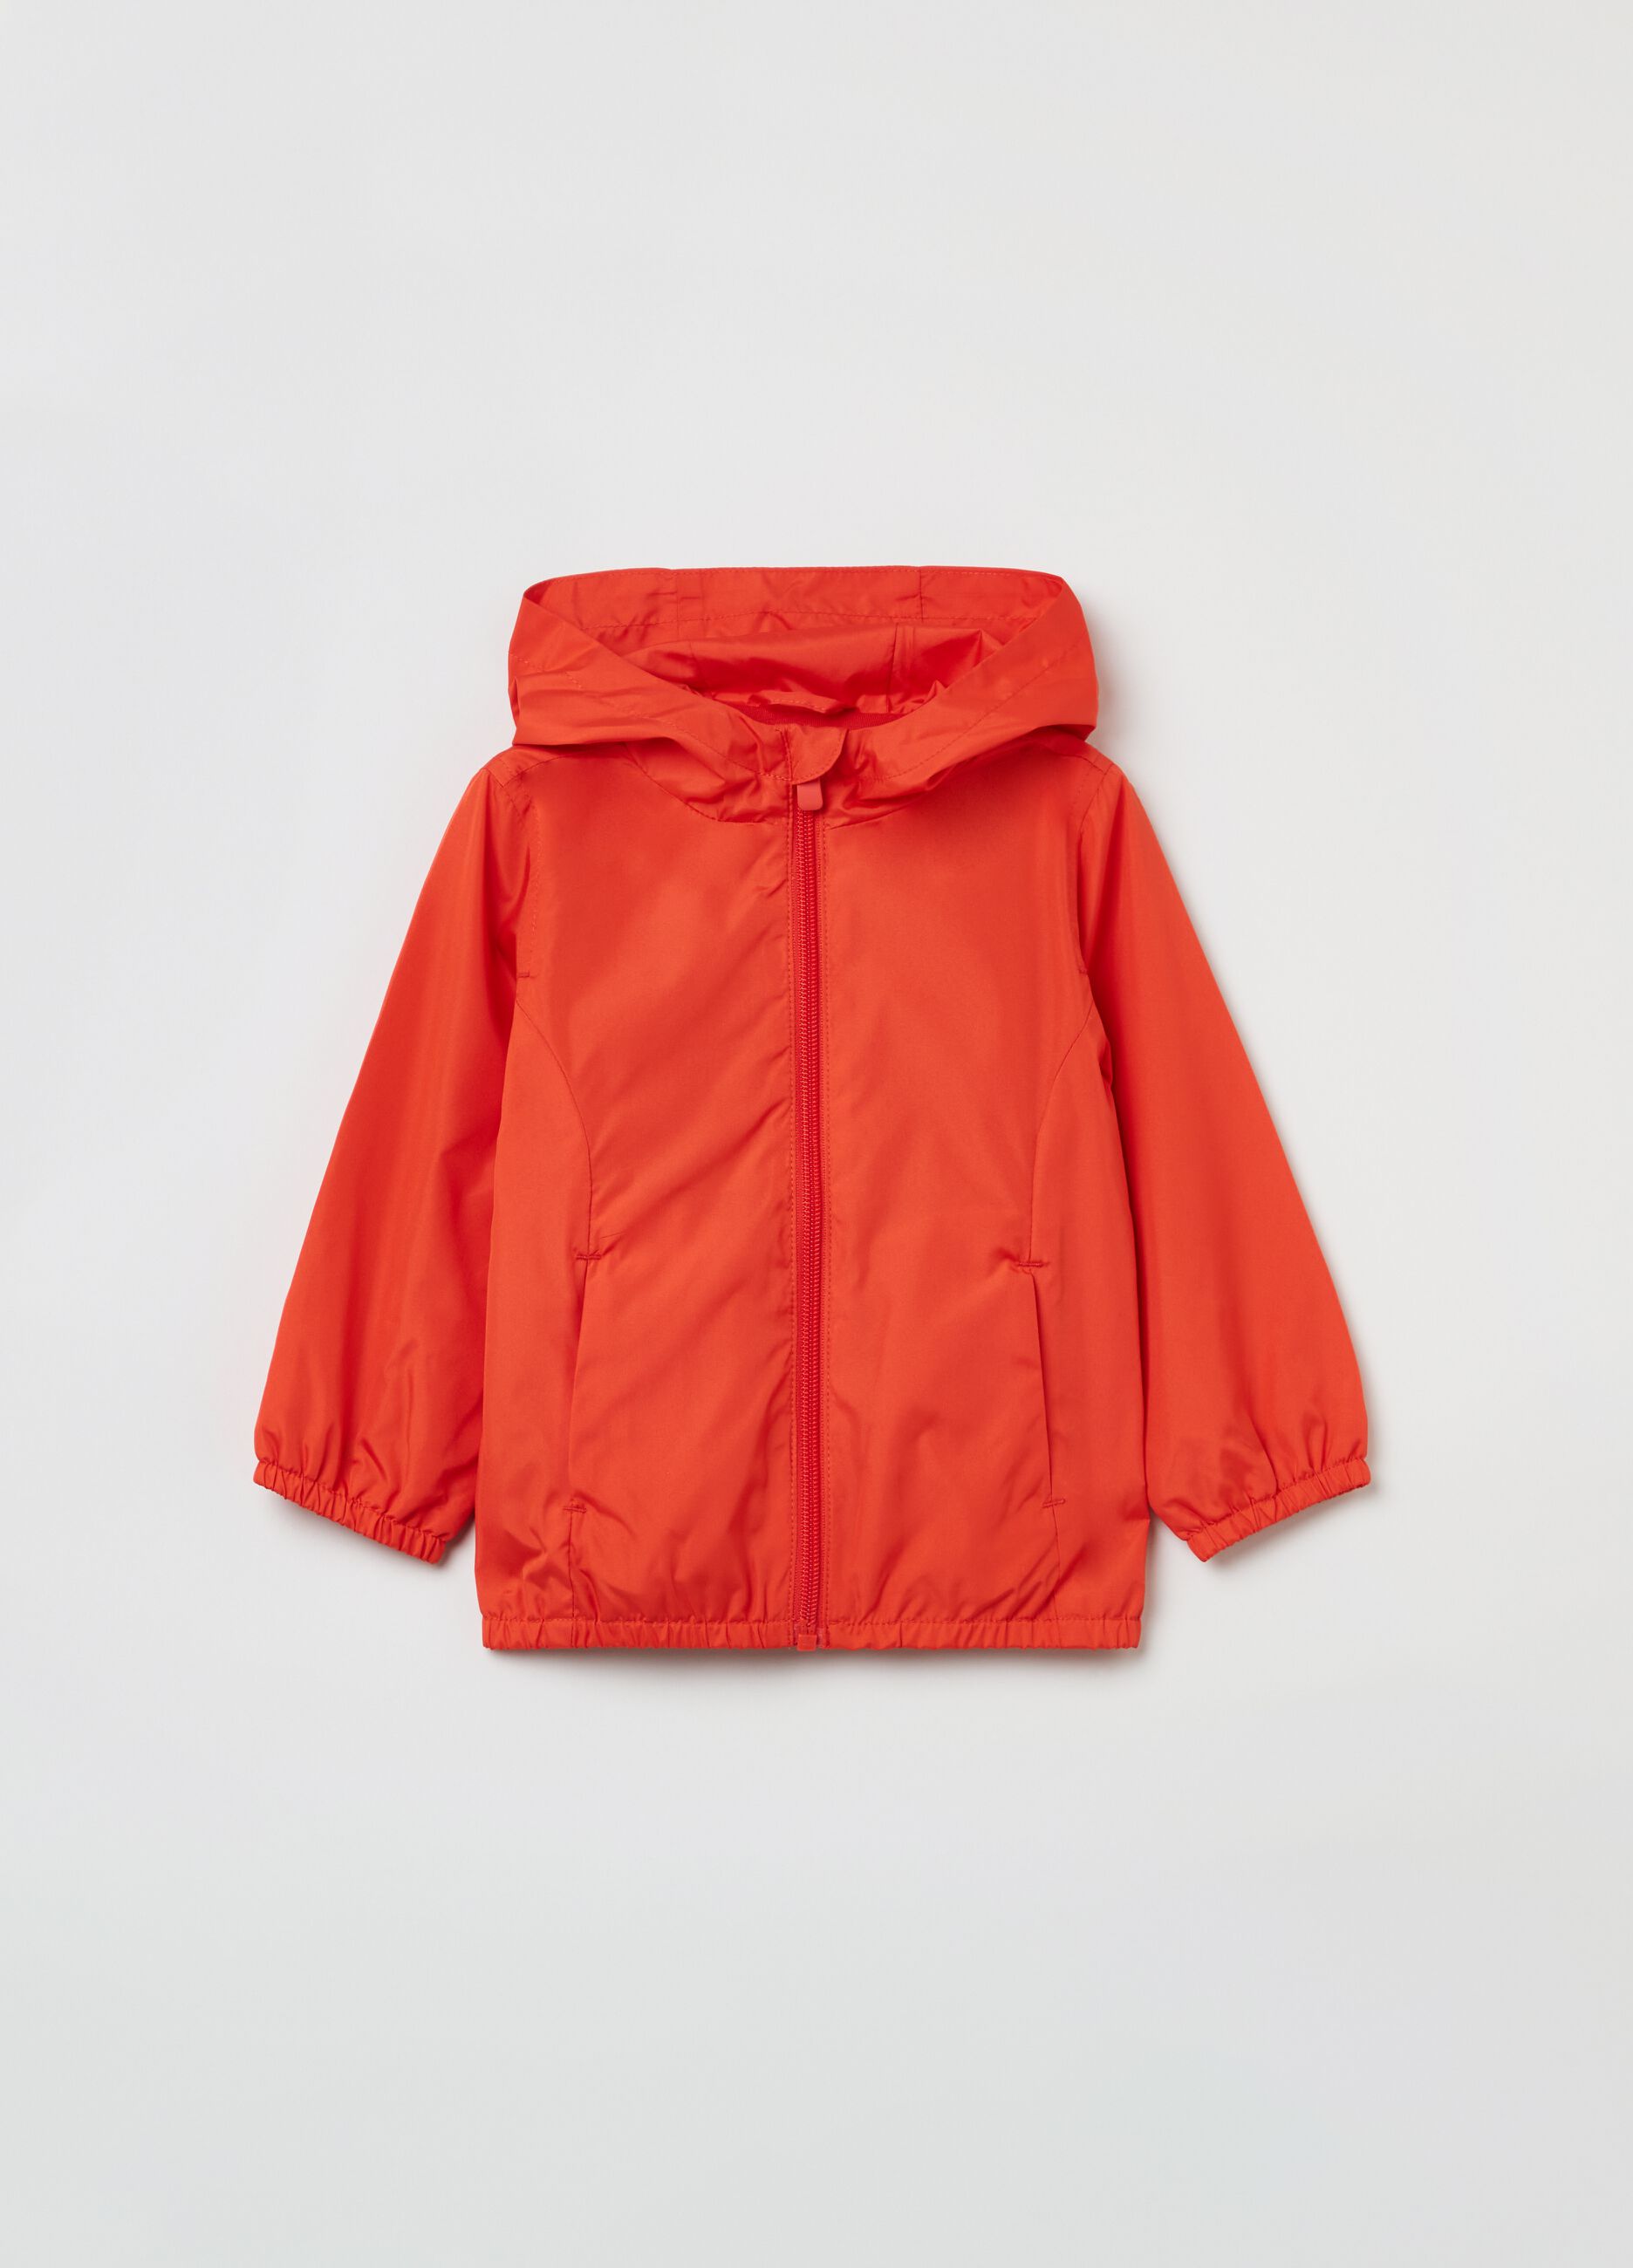 Waterproof jacket with hood